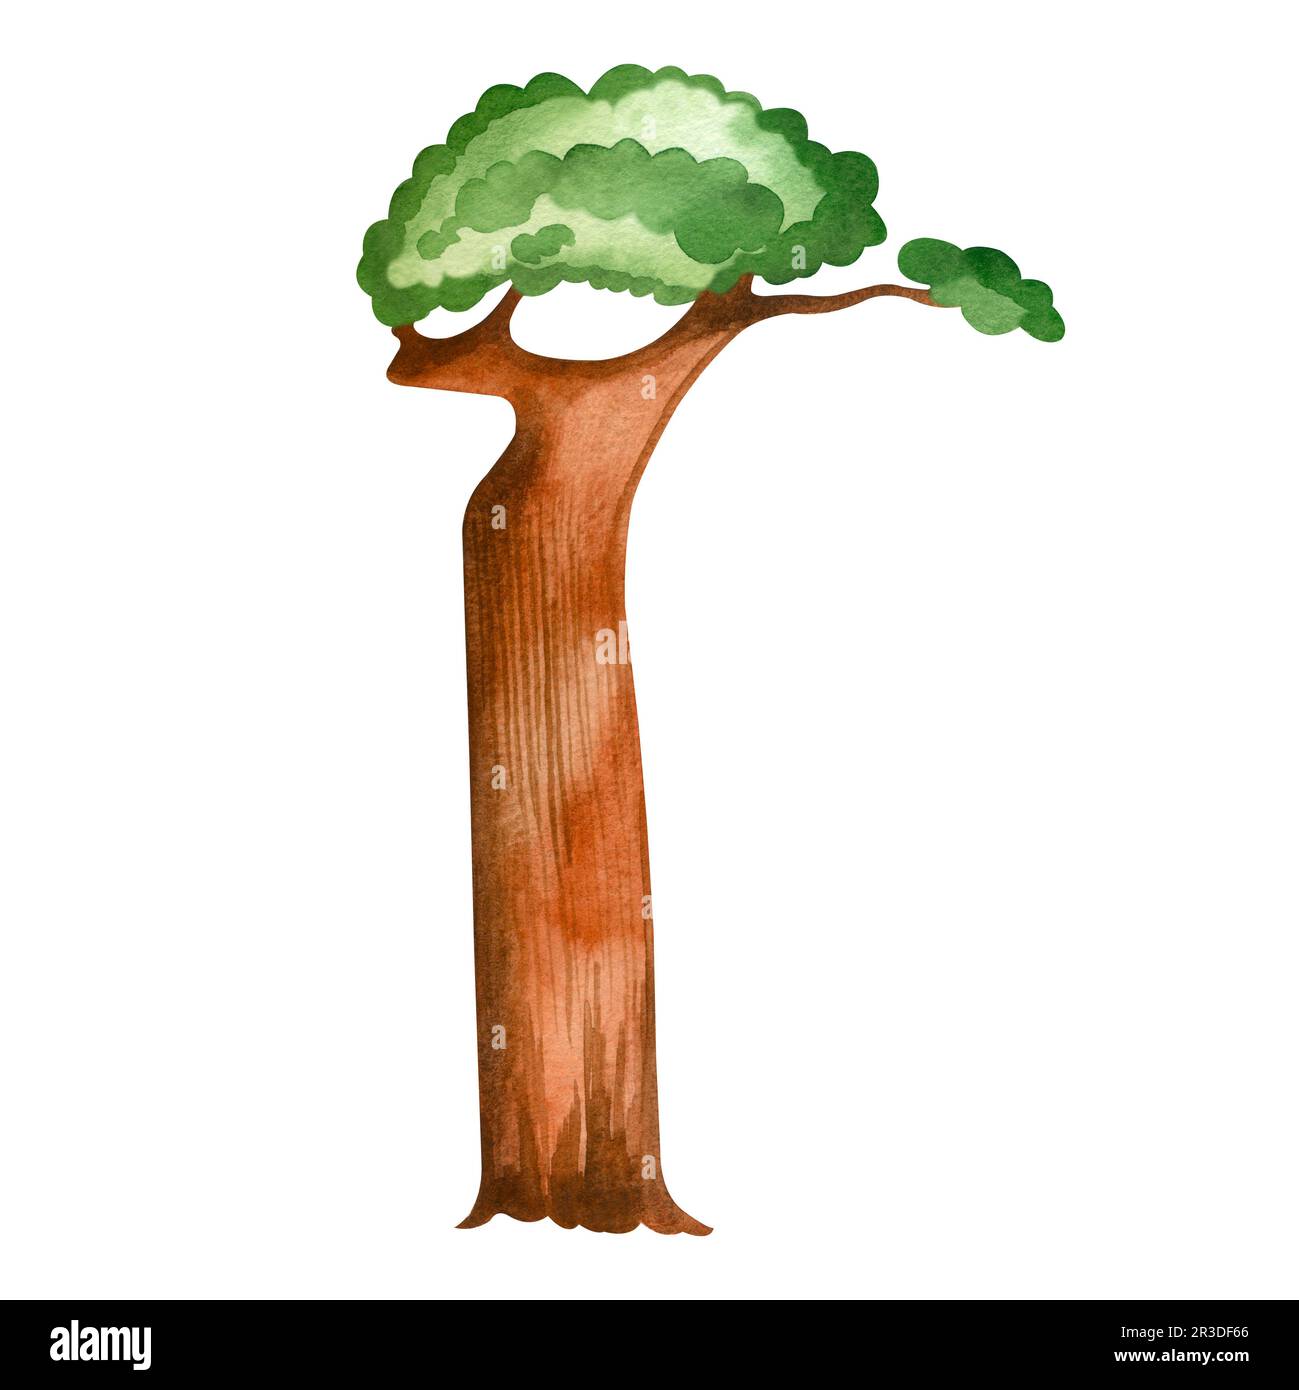 Baobab africain peint en aquarelle et isolé sur fond blanc. Un arbre à feuillage vert et un tronc brun épais. Convient pour l'impression sur p Banque D'Images